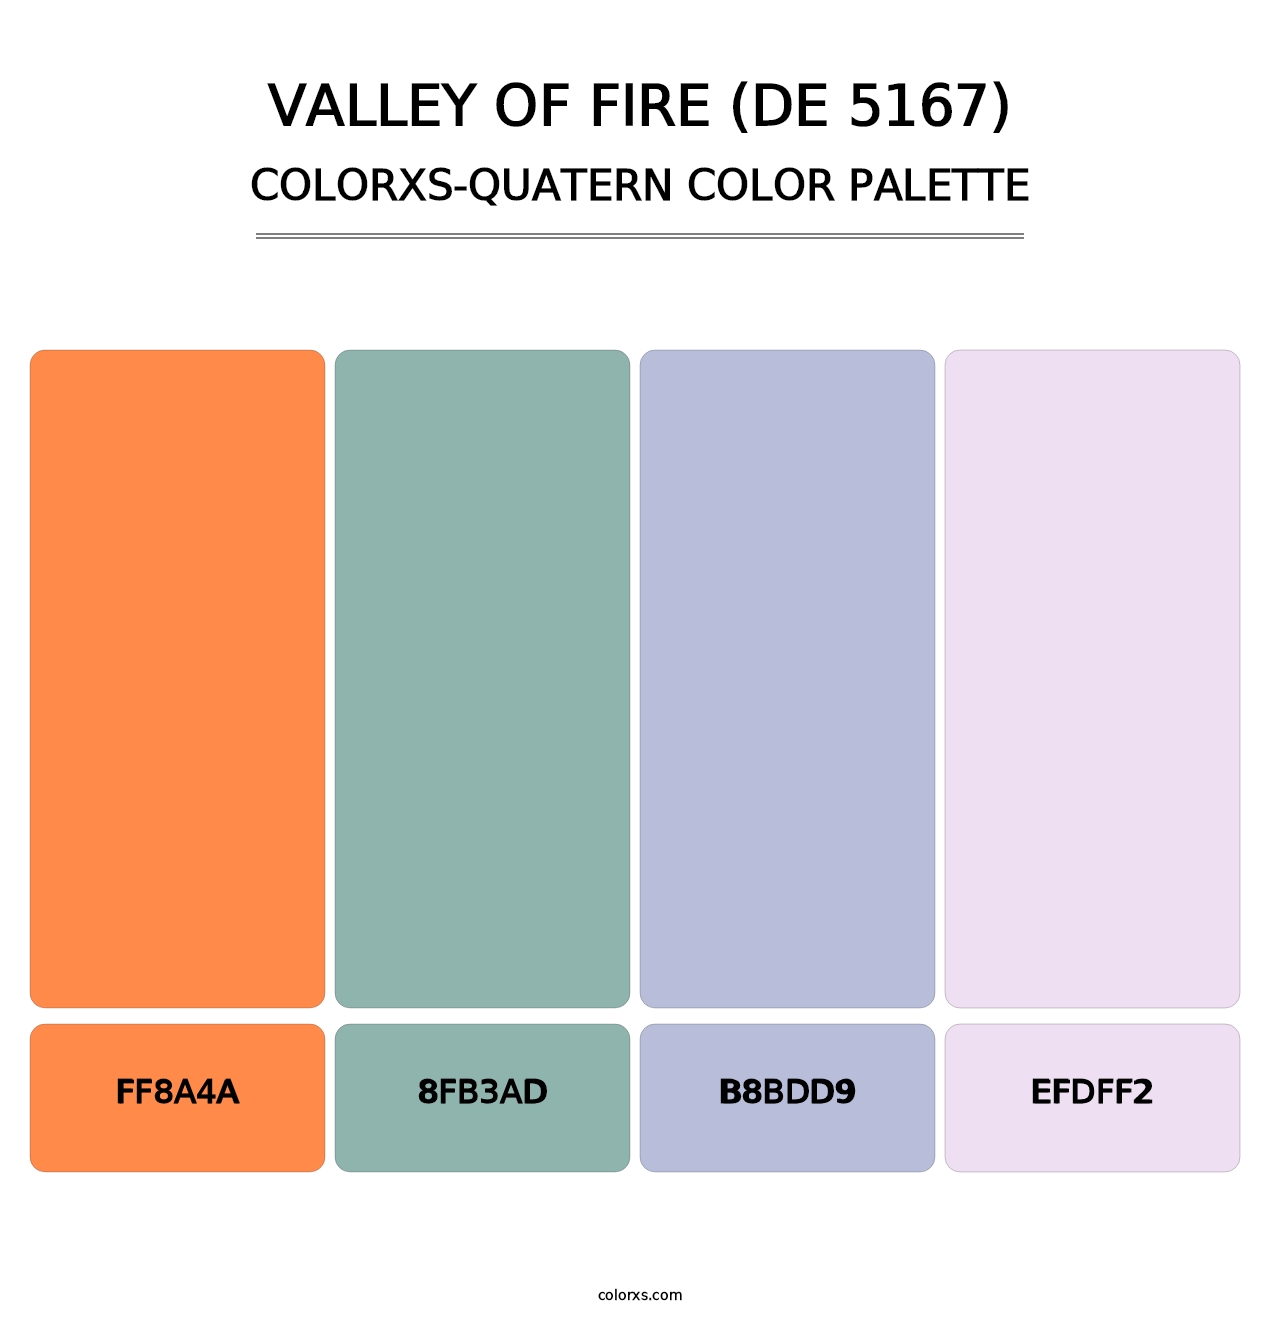 Valley of Fire (DE 5167) - Colorxs Quatern Palette